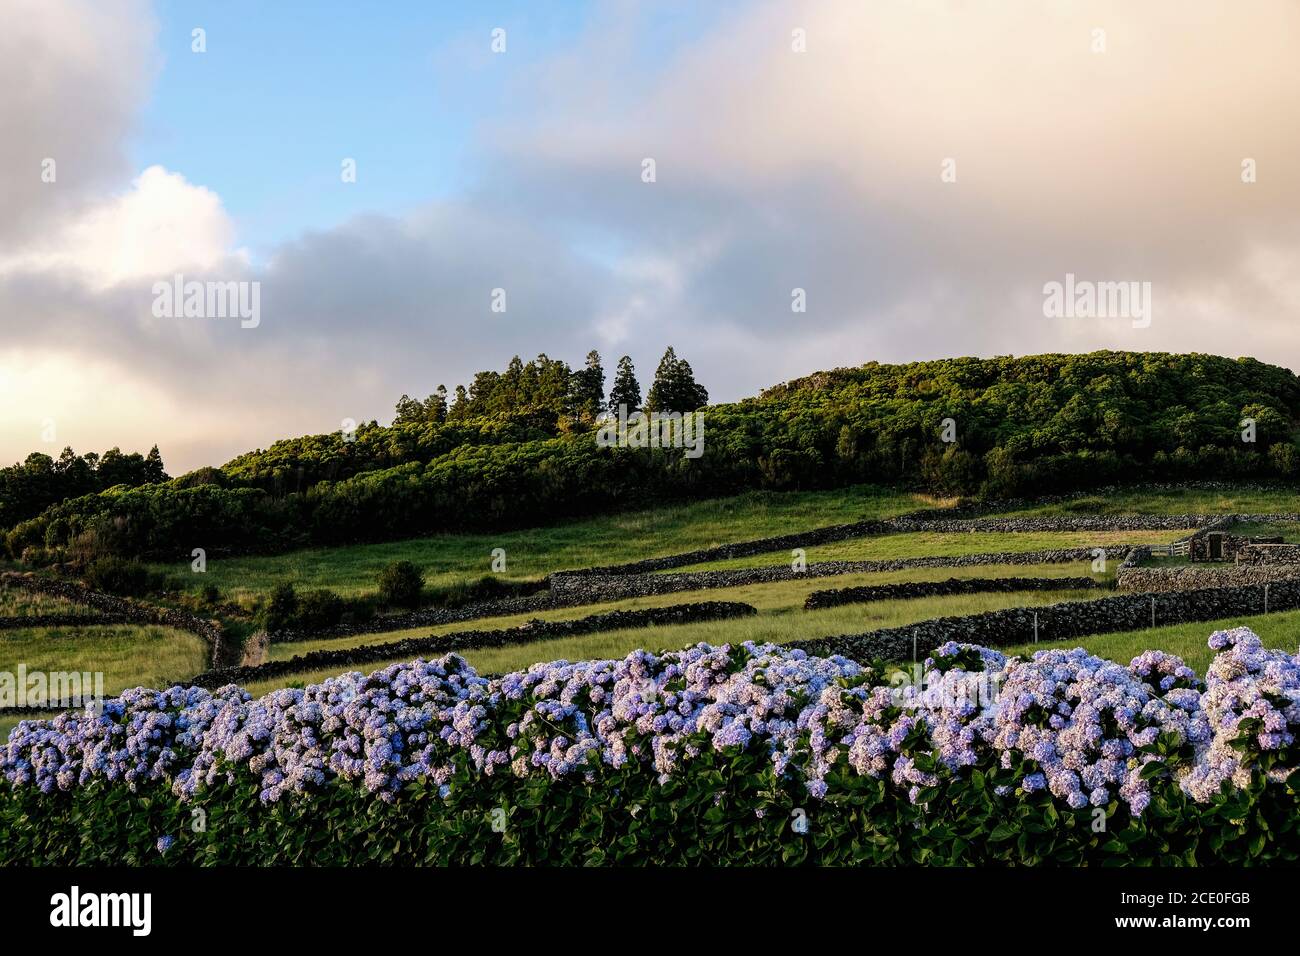 Landschaftsansicht der grünen Felder der Terceira Insel auf den Azoren, Portugal. Mit Hortensien Blumen auf dem Boden und einige Bäume auf der Spitze des Hügels. Stockfoto